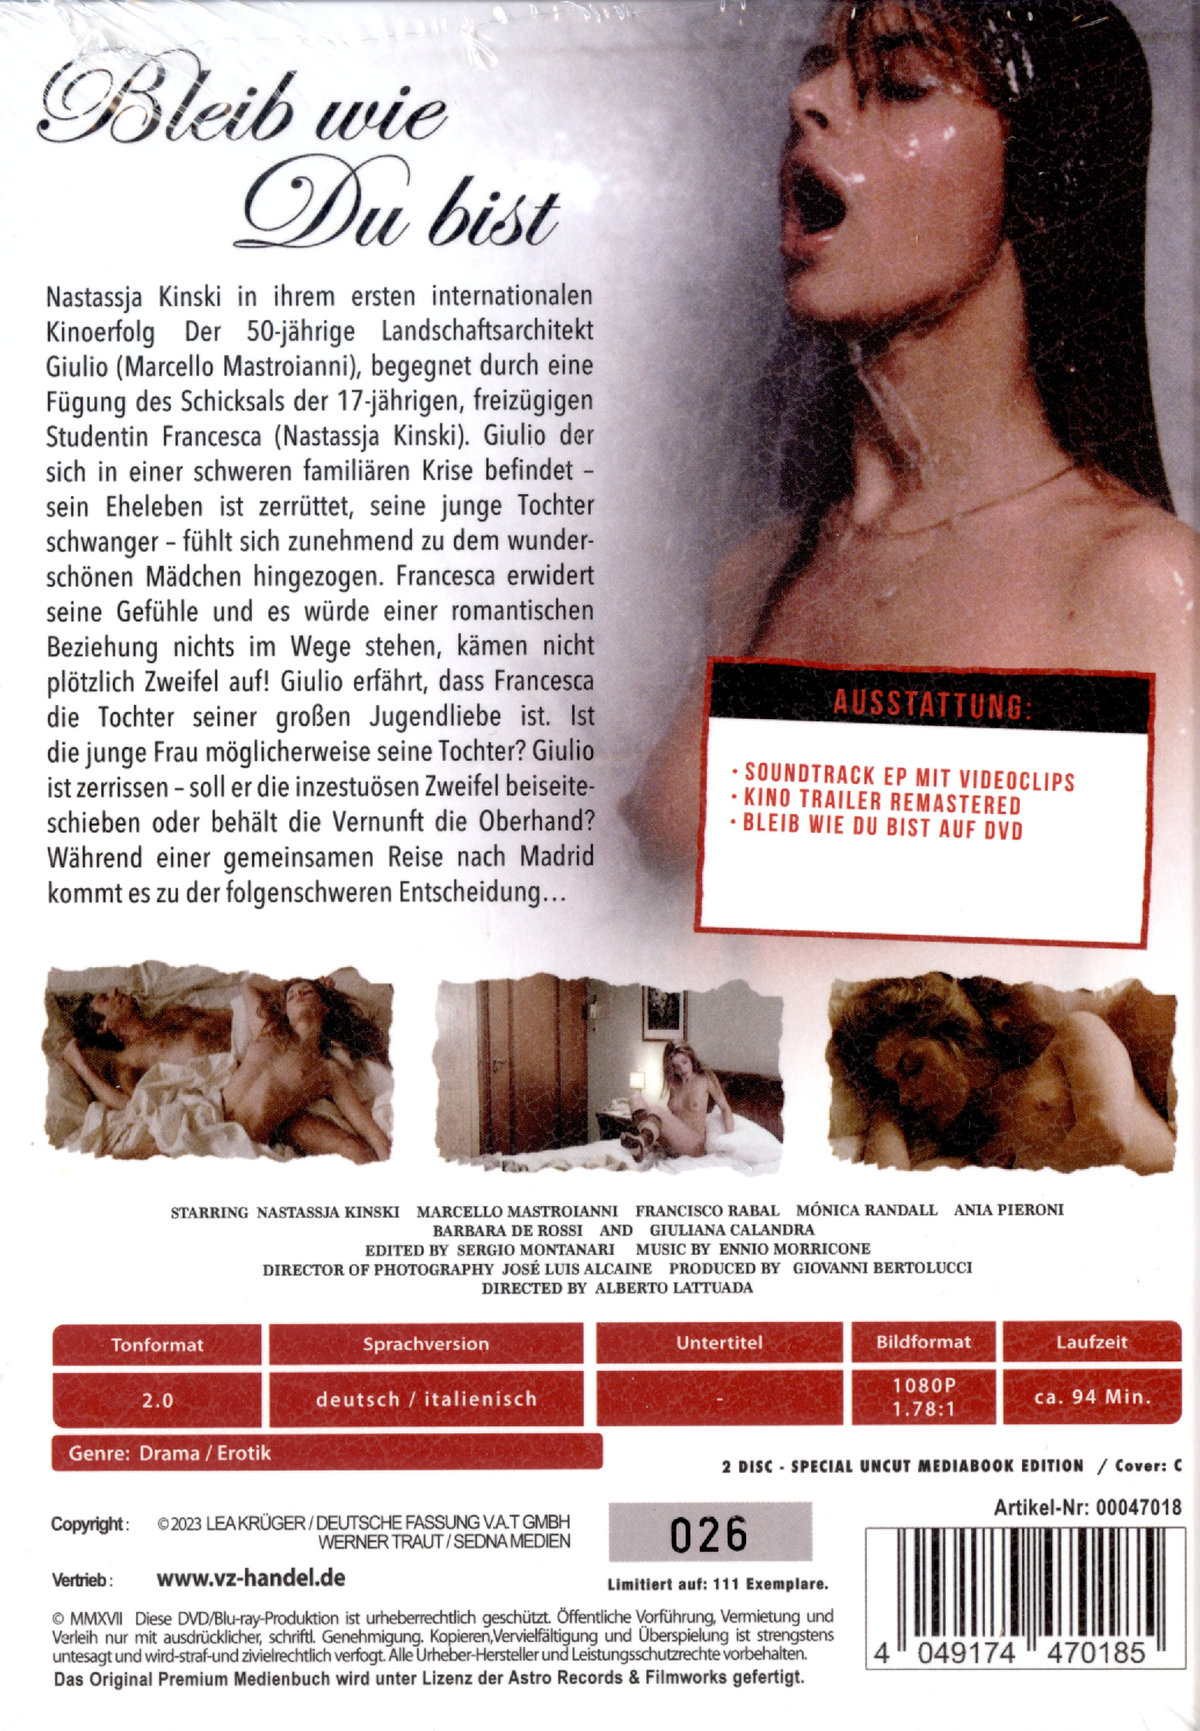 Bleib wie du bist - Cosi come sei - Uncut Mediabook Edition (DVD+blu-ray) (C)